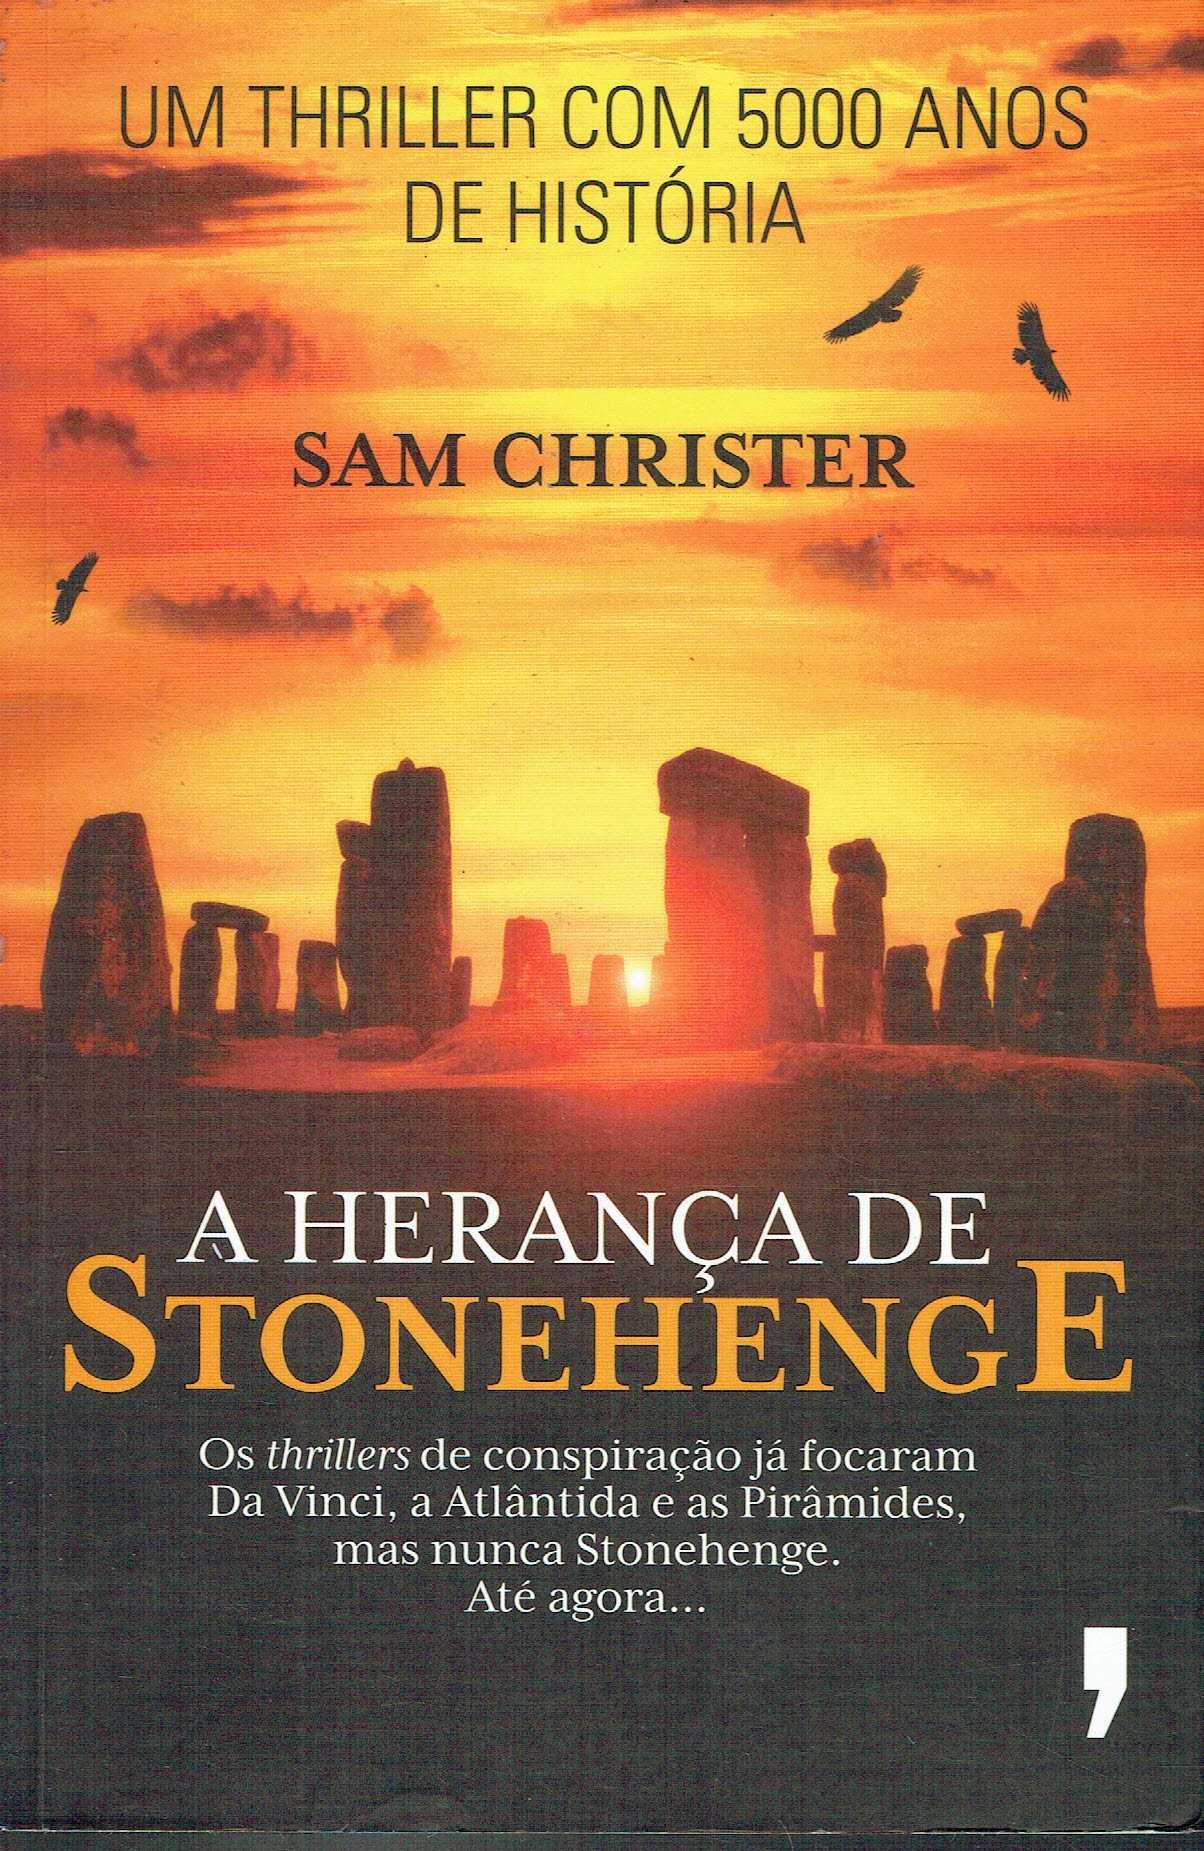 15193

A Herança de Stonehenge
de Sam Christer